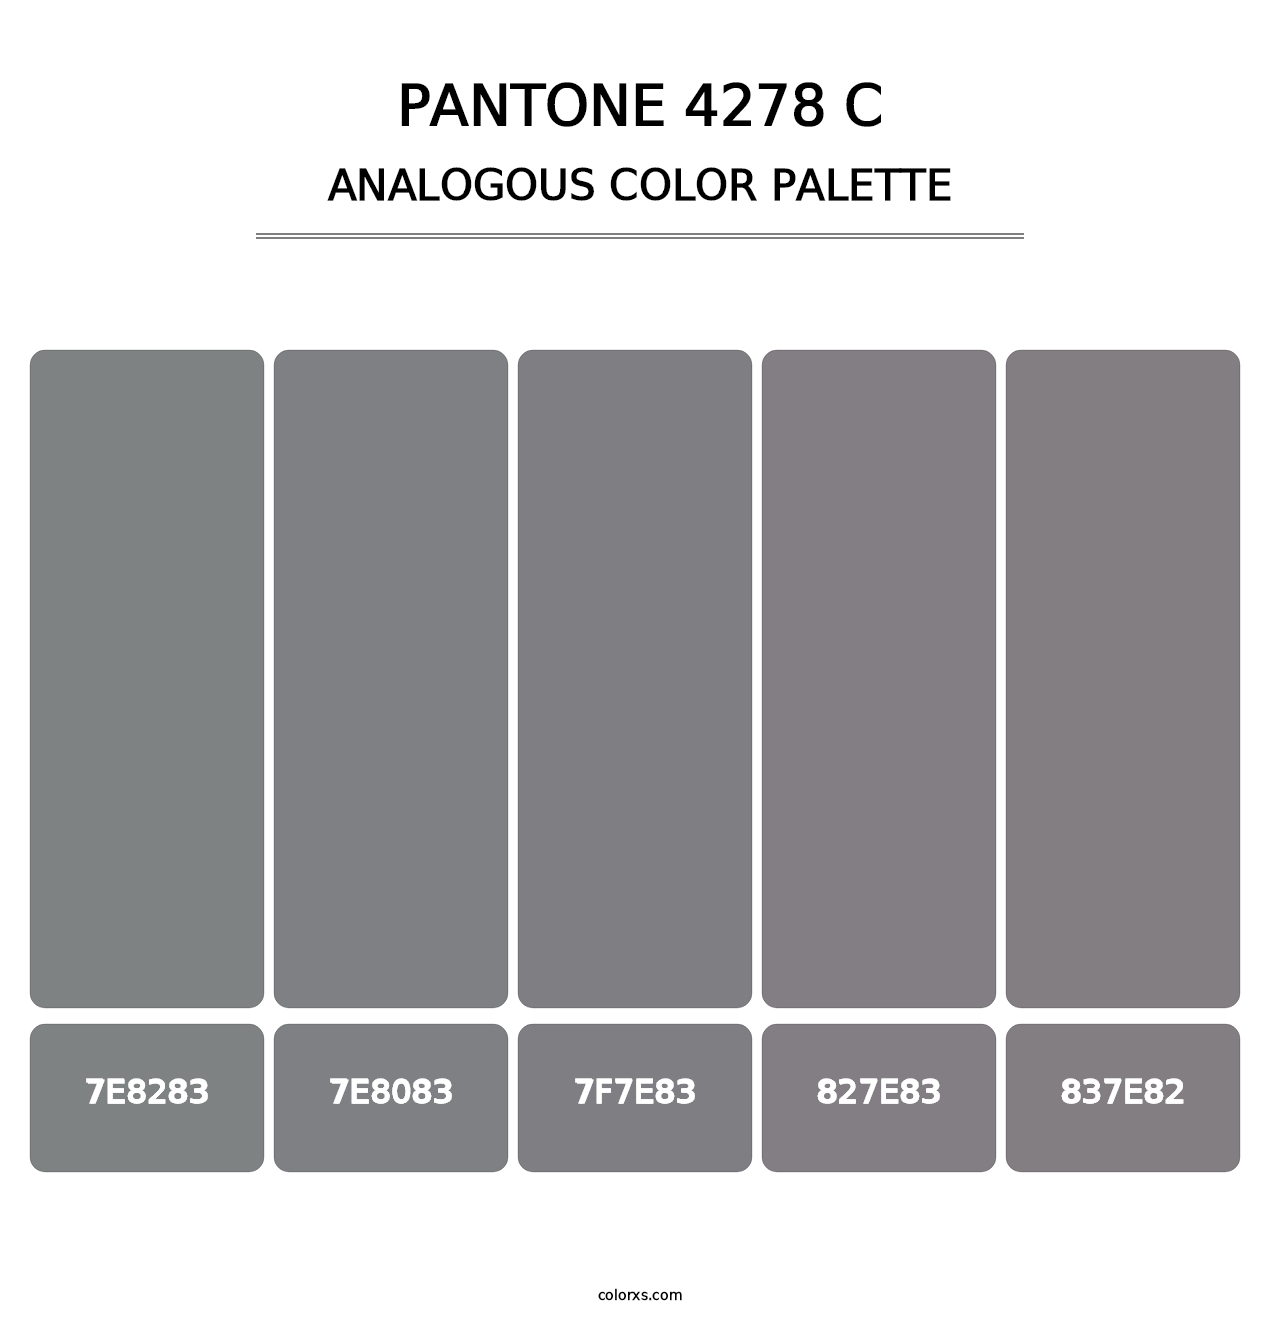 PANTONE 4278 C - Analogous Color Palette